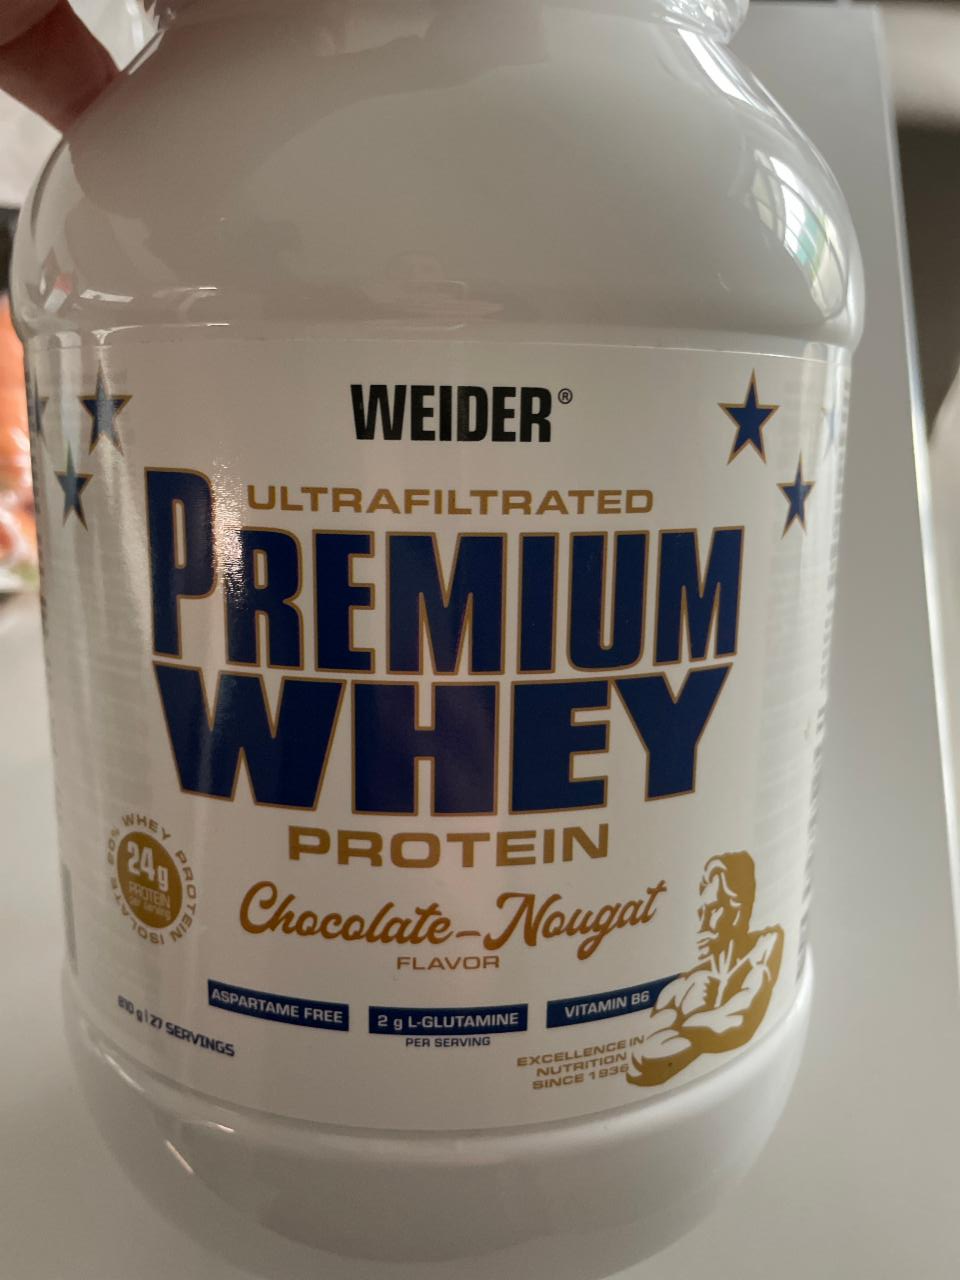 Fotografie - Premium Whey Protein chocolate-nougat Weider